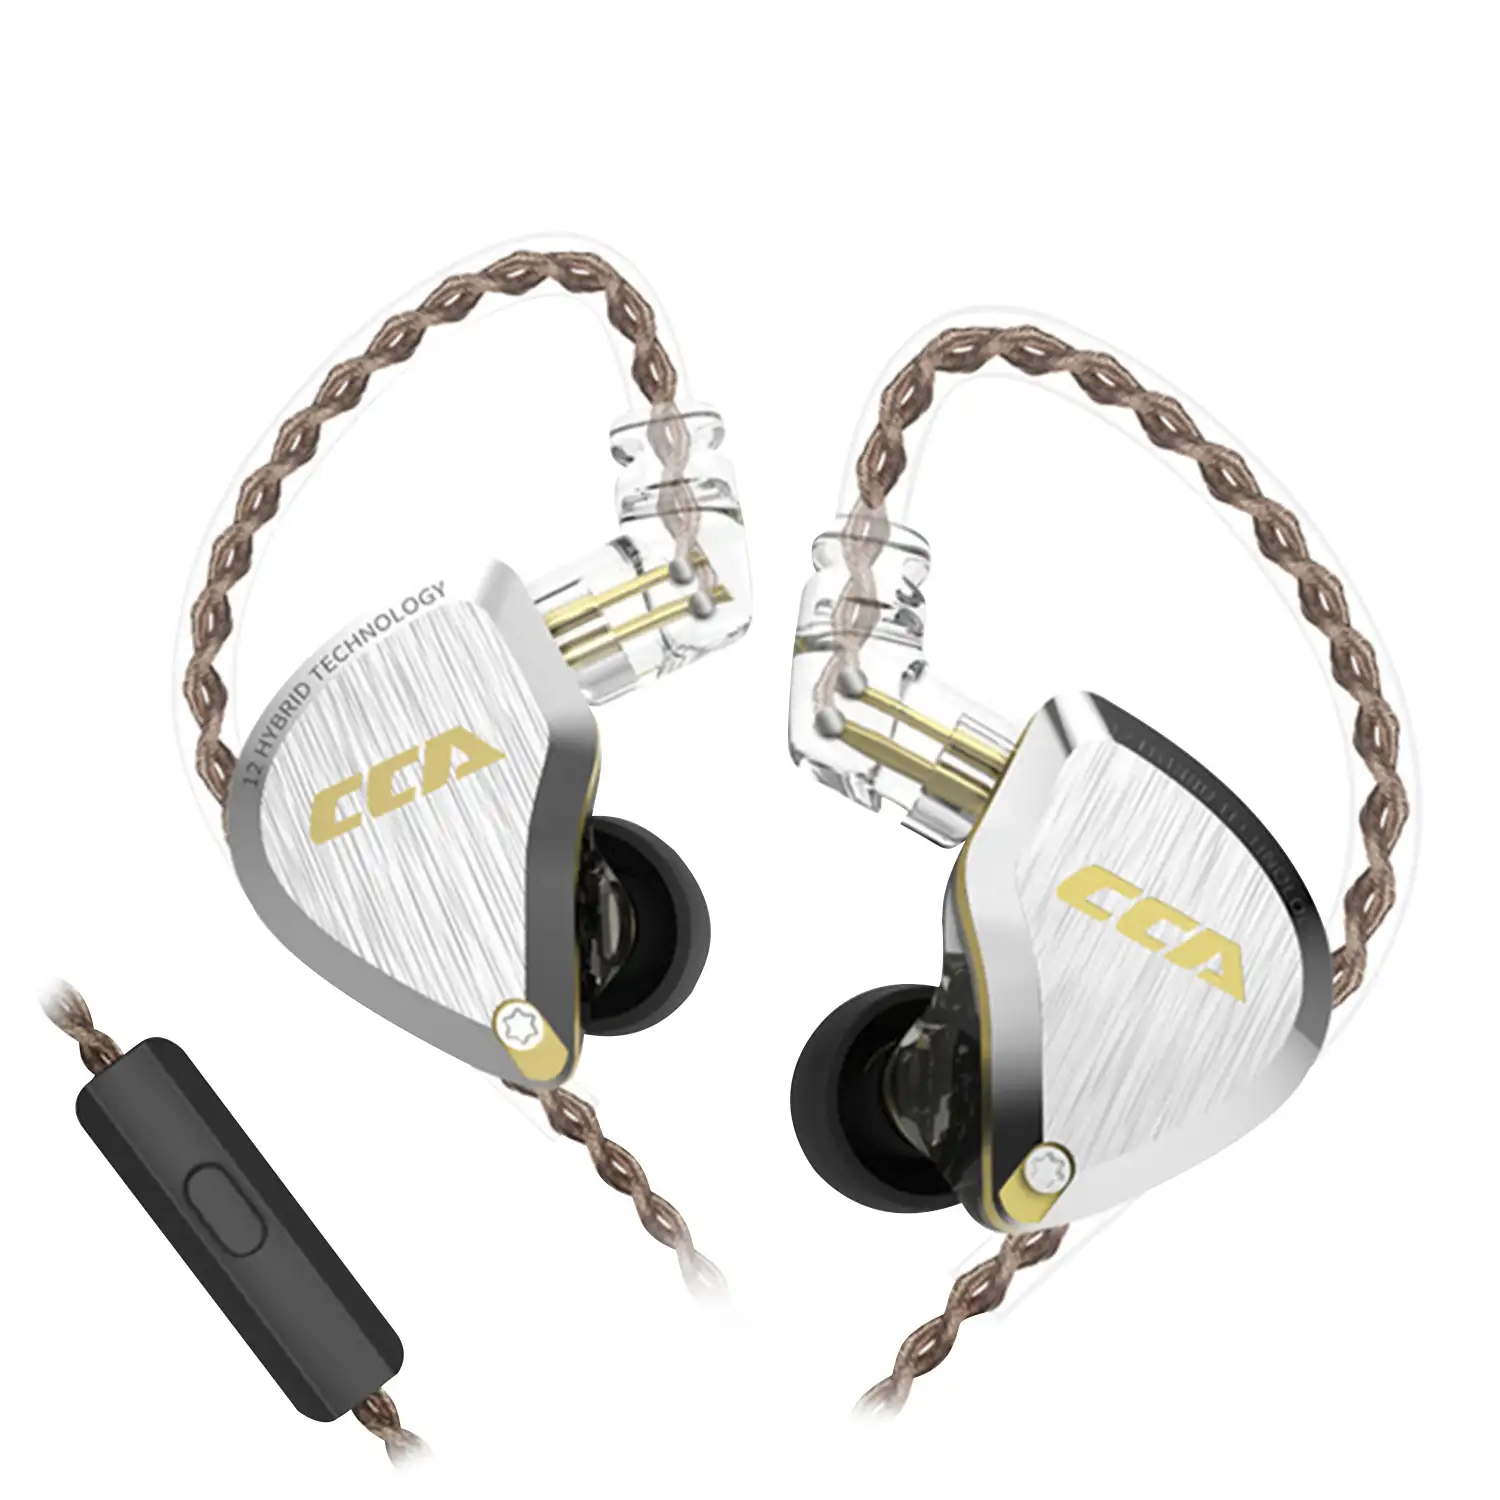 Auriculares híbridos in-ear CCA C12 de alta fidelidad. 5 controladores de armadura balanceada + 1 controlador dinámico. Cable con micro, conexión jack 3,5mm.